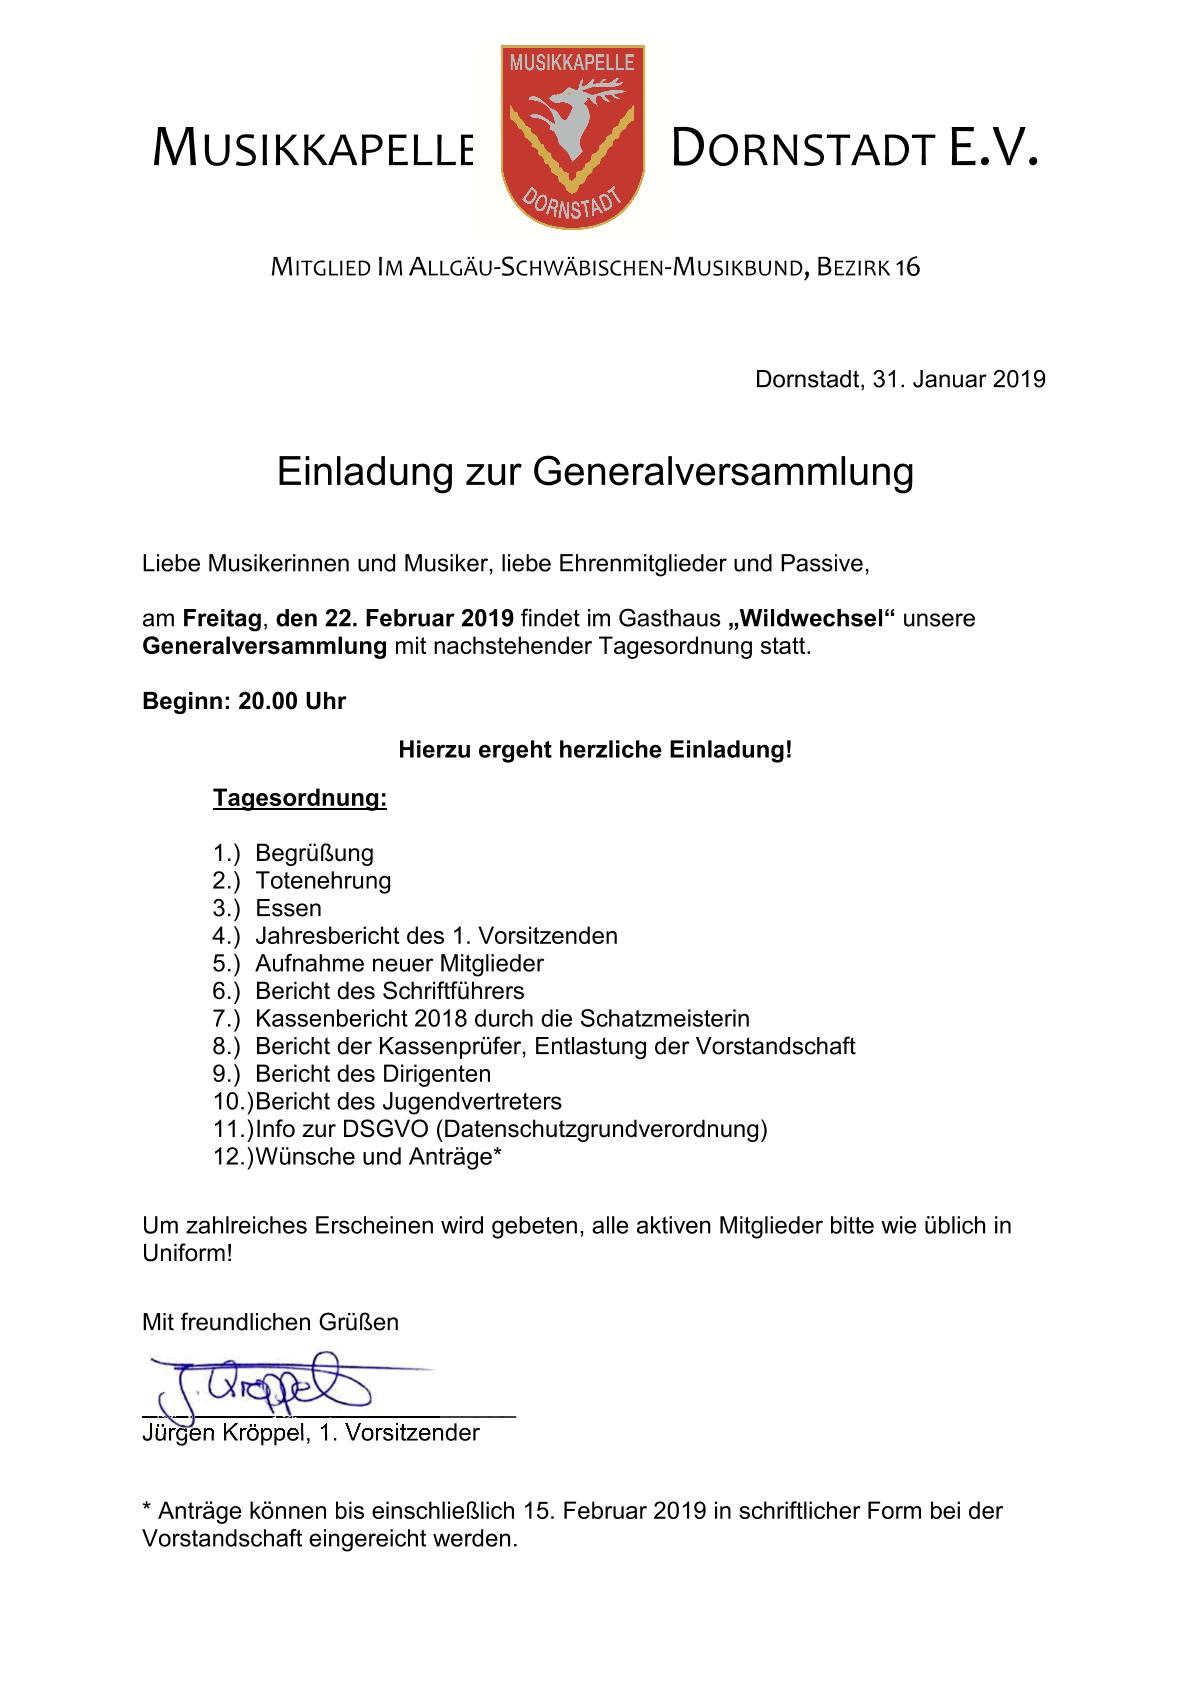 Musikkapelle Dornstadt - Einladung zur Generalversammlung 2019